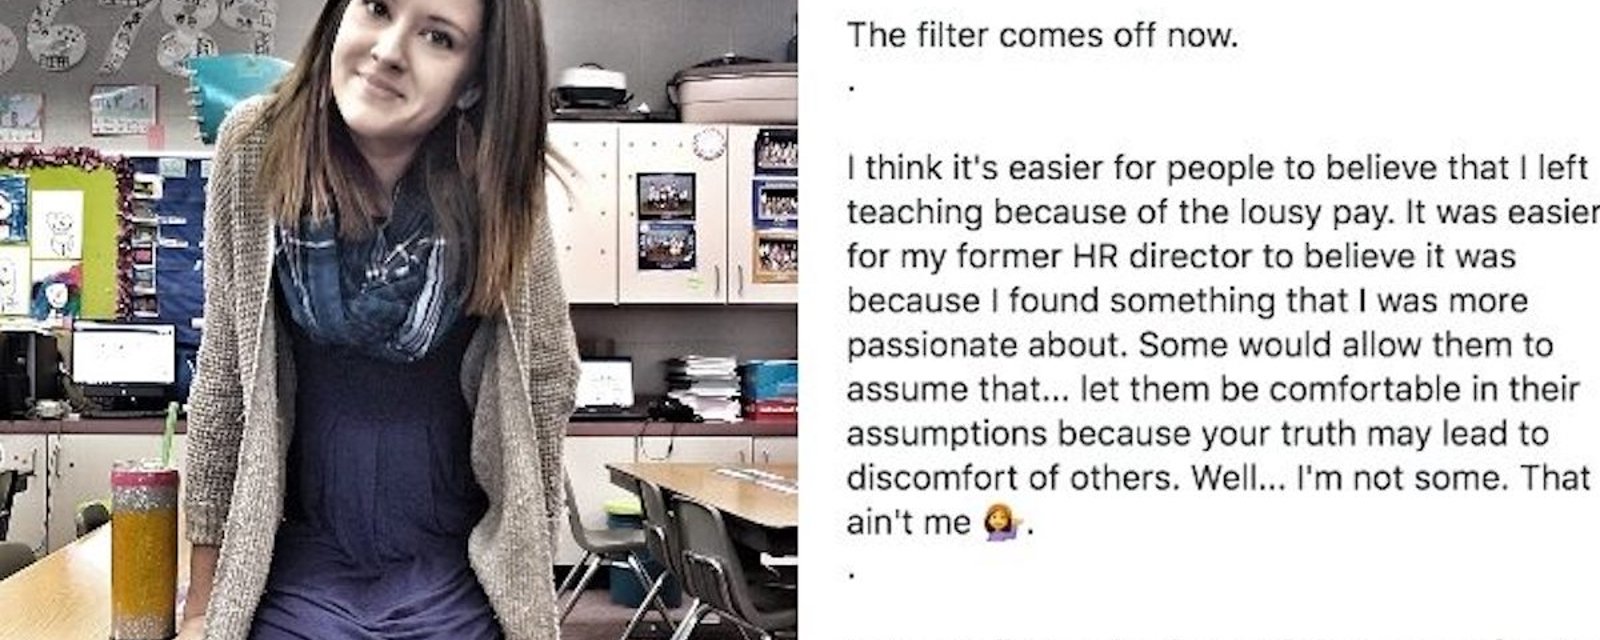 Dans une publication rapidement devenue virale, une enseignante explique en 5 points pourquoi elle a démissionné